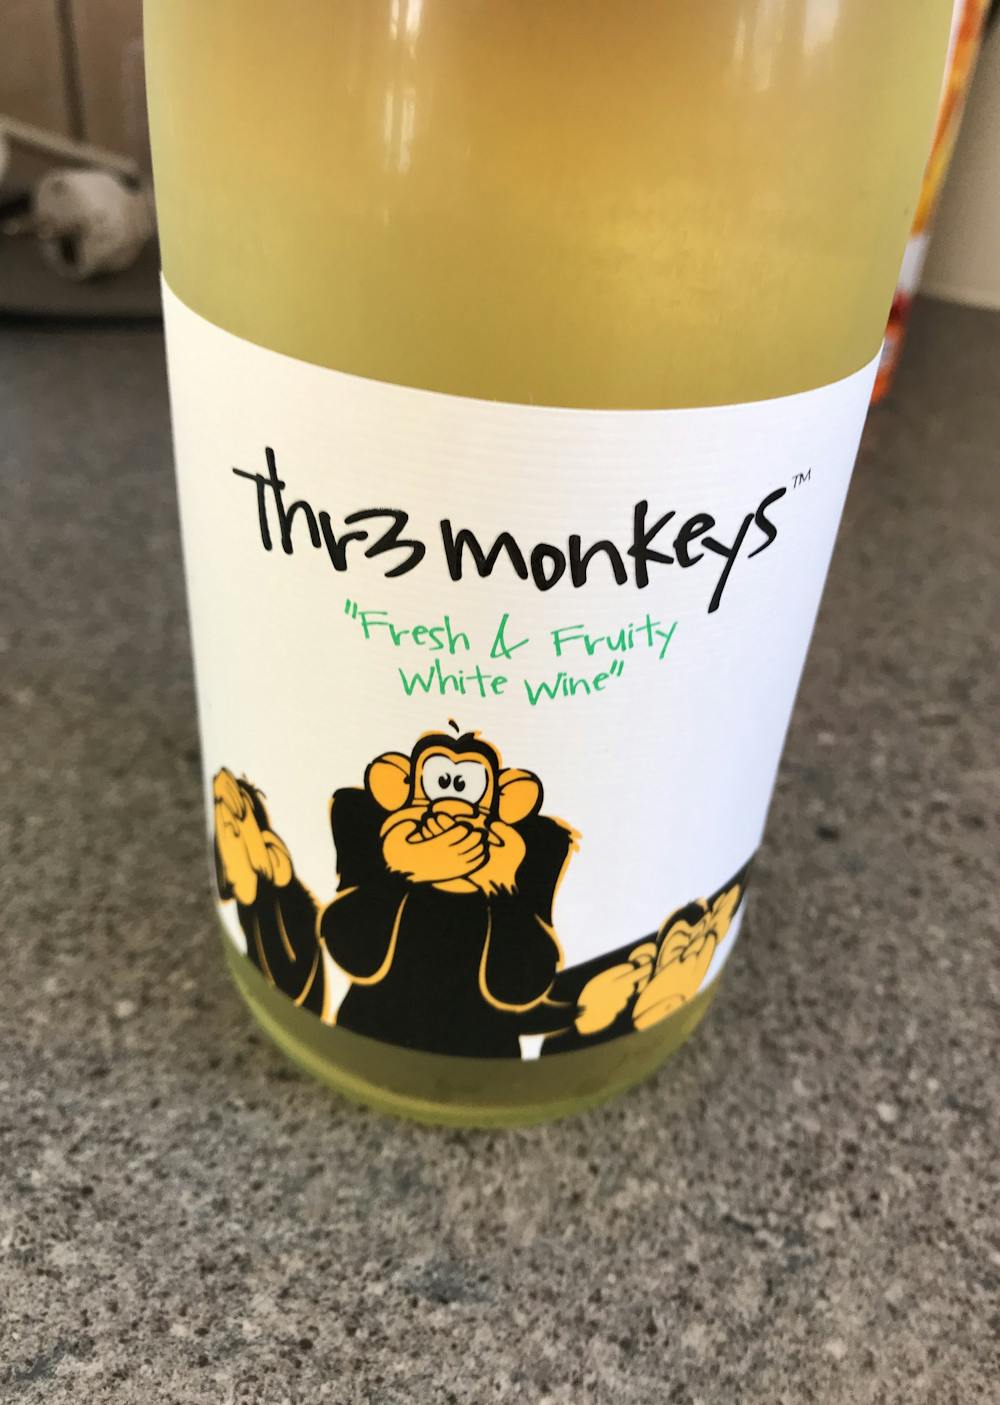 Thr3 monkeys, 